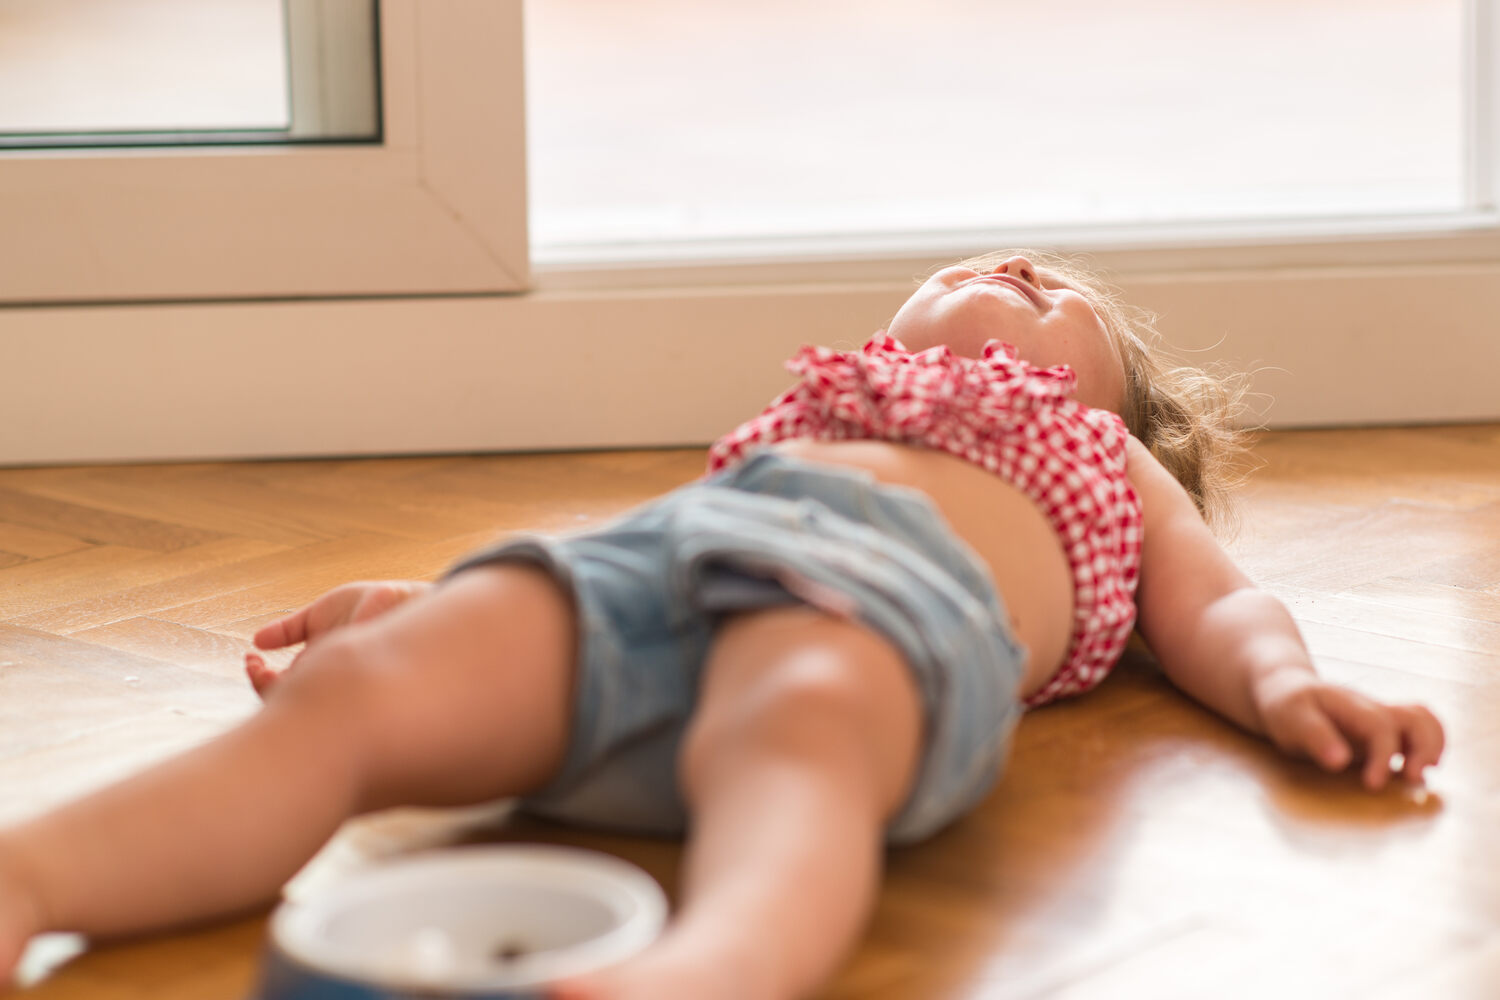 A toddler girl lying on floor